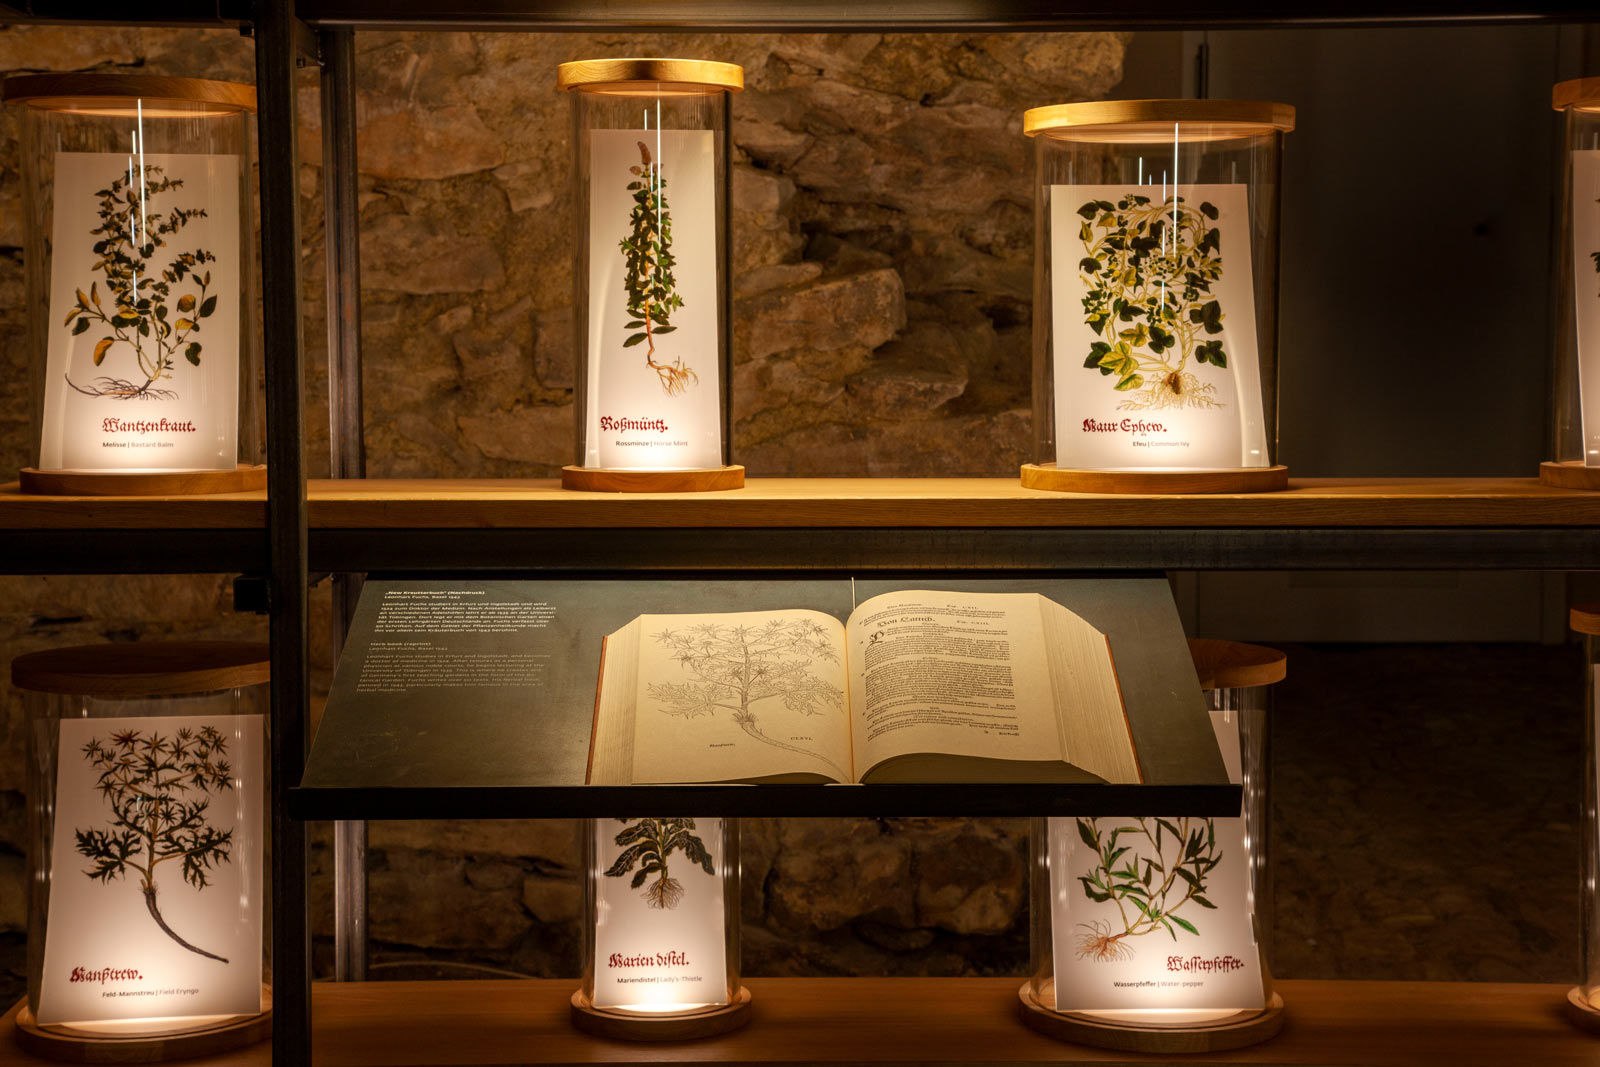 Das Referenzbild für Ausstellungsgestaltung aus der Dauerausstellung „Eingetreten – 1700 Jahre Klosterkultur“ zeigt eine Rauminszenierung mit speziellem Lichtkonzept.